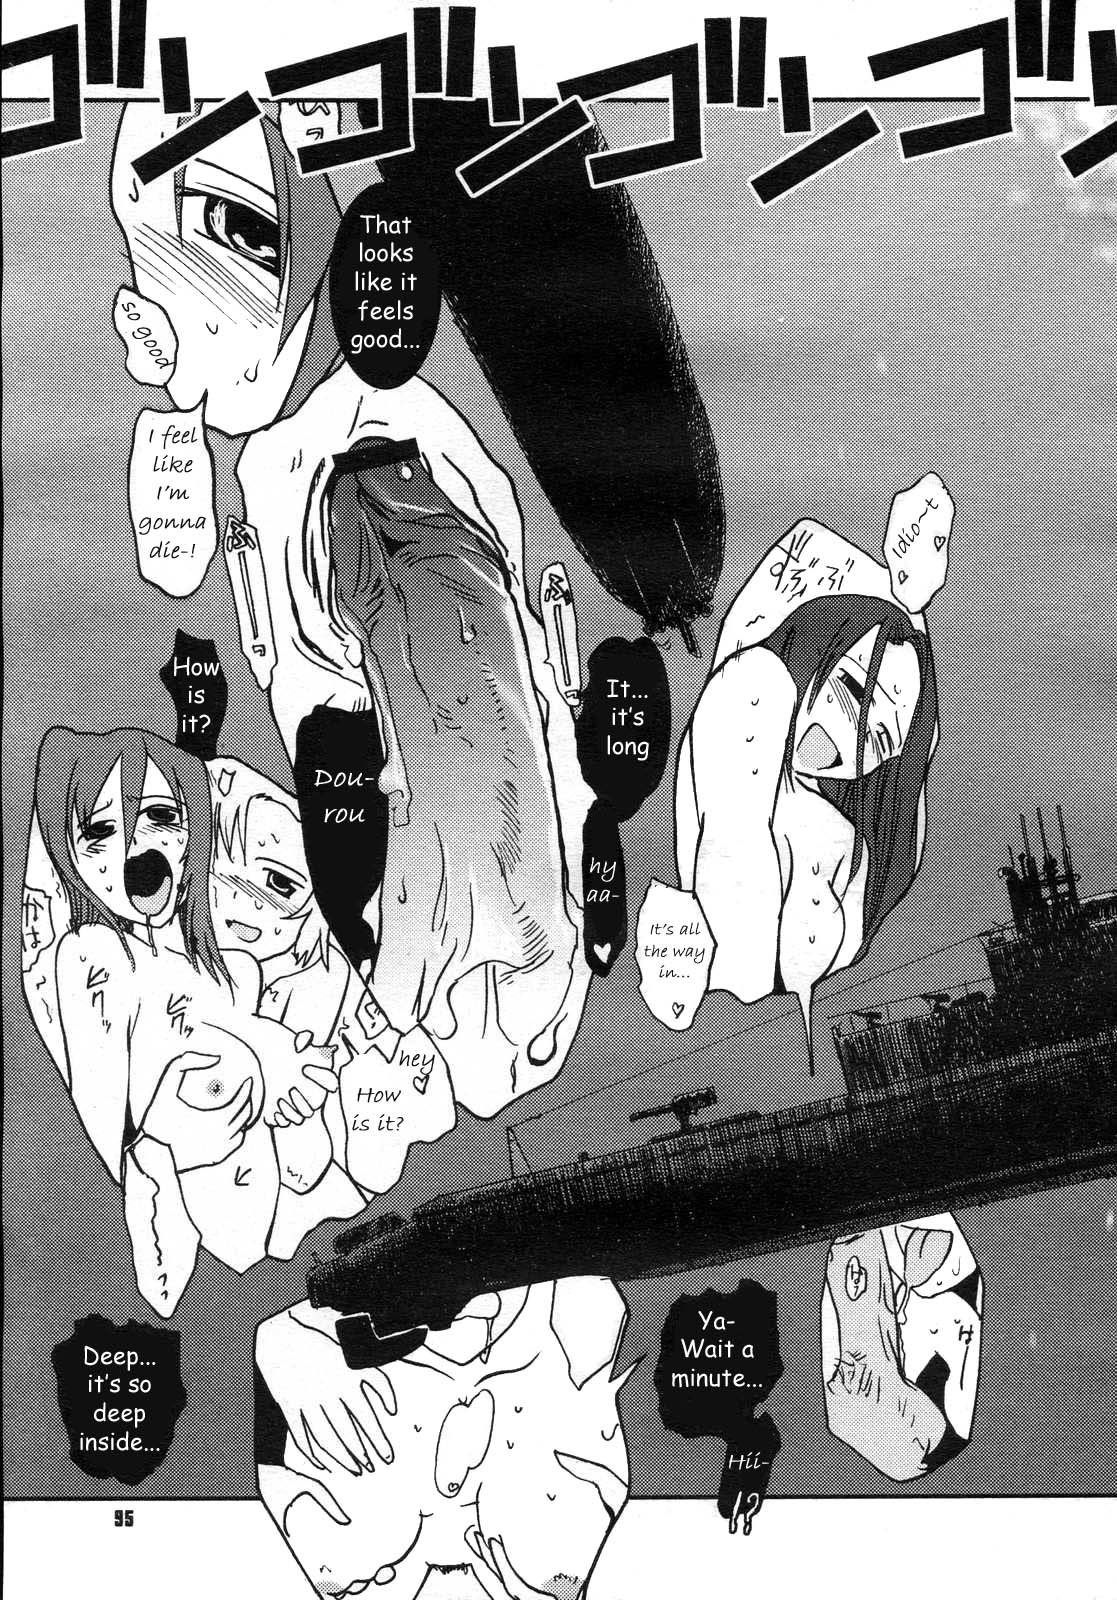 Mitsumei a.k.a. I-404 16 hentai manga